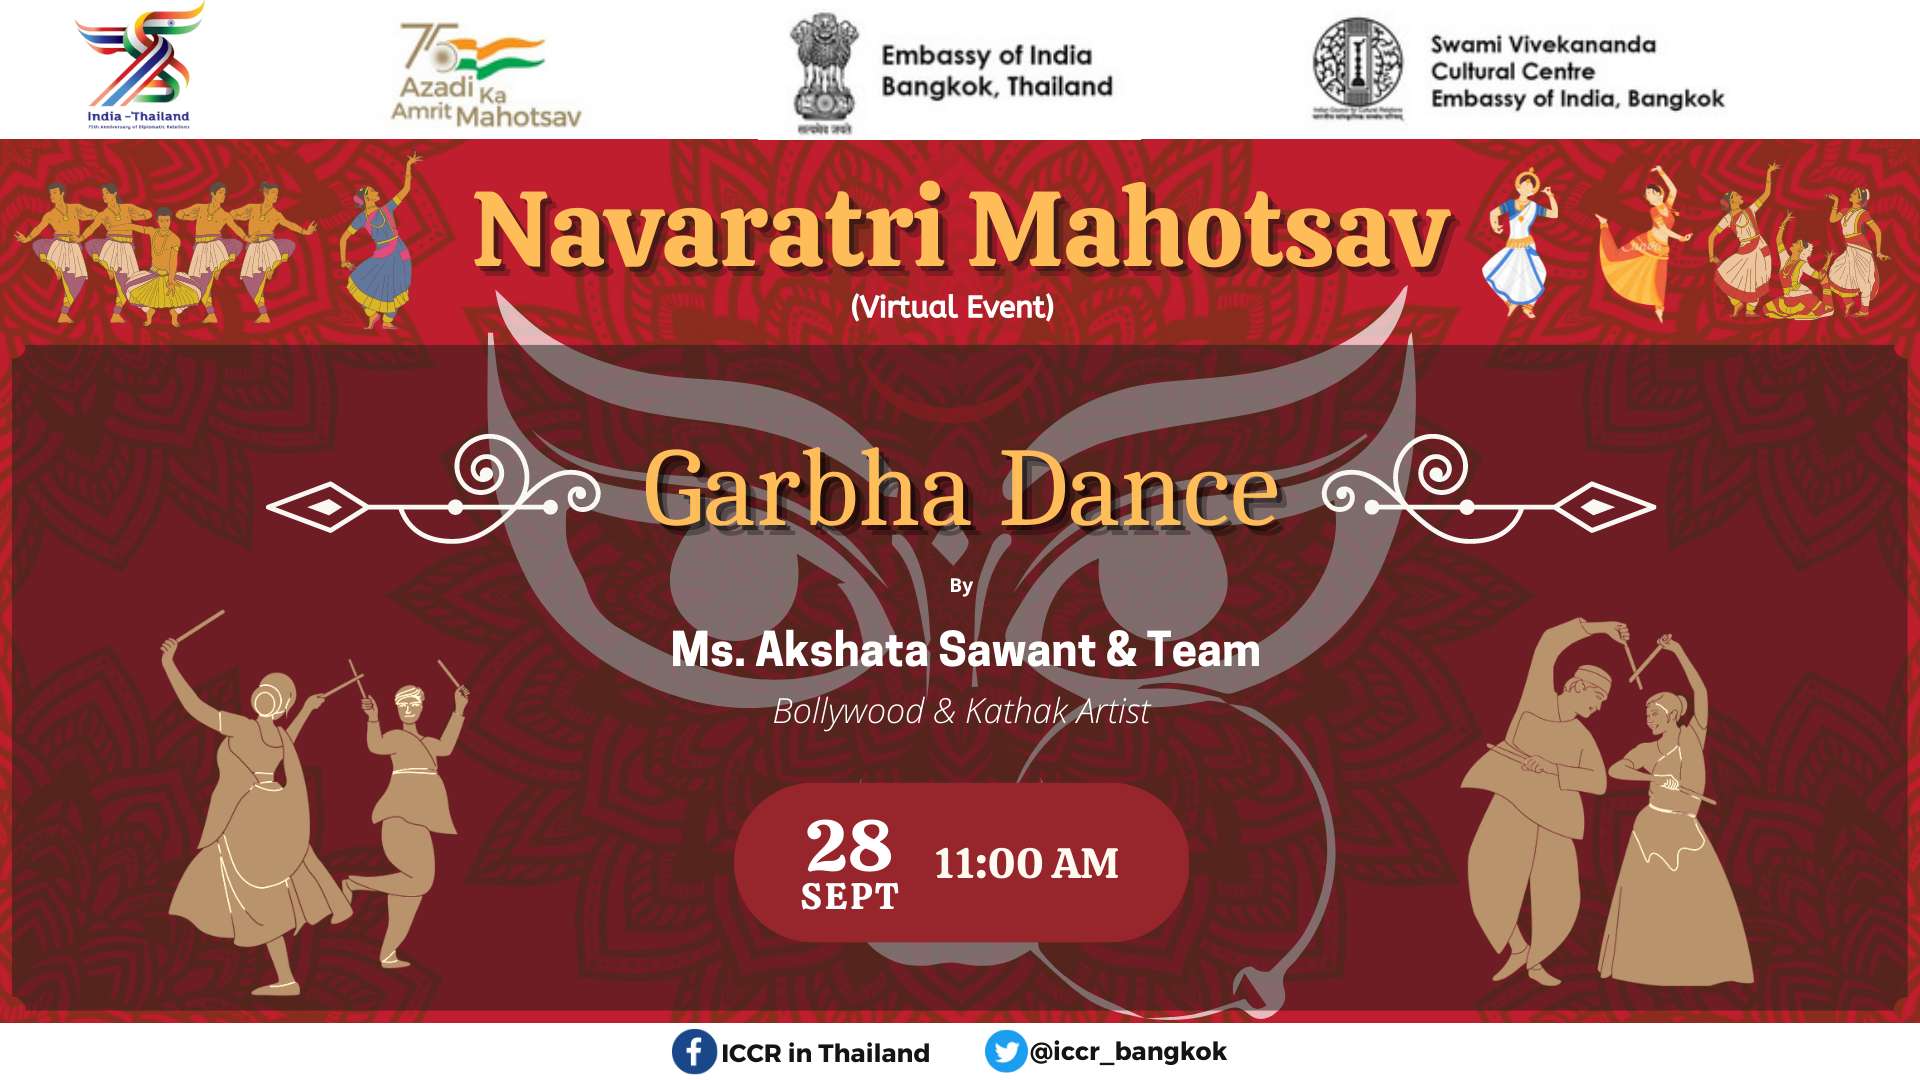 एसवीसीसी का भारतीय दूतावास, बैंकॉक, नवरात्रि महोत्सव-नवरात्रि दिवस 3 के उपलक्ष्य में एक "नवरात्रि महोत्सव" का आयोजन कर रहा है।